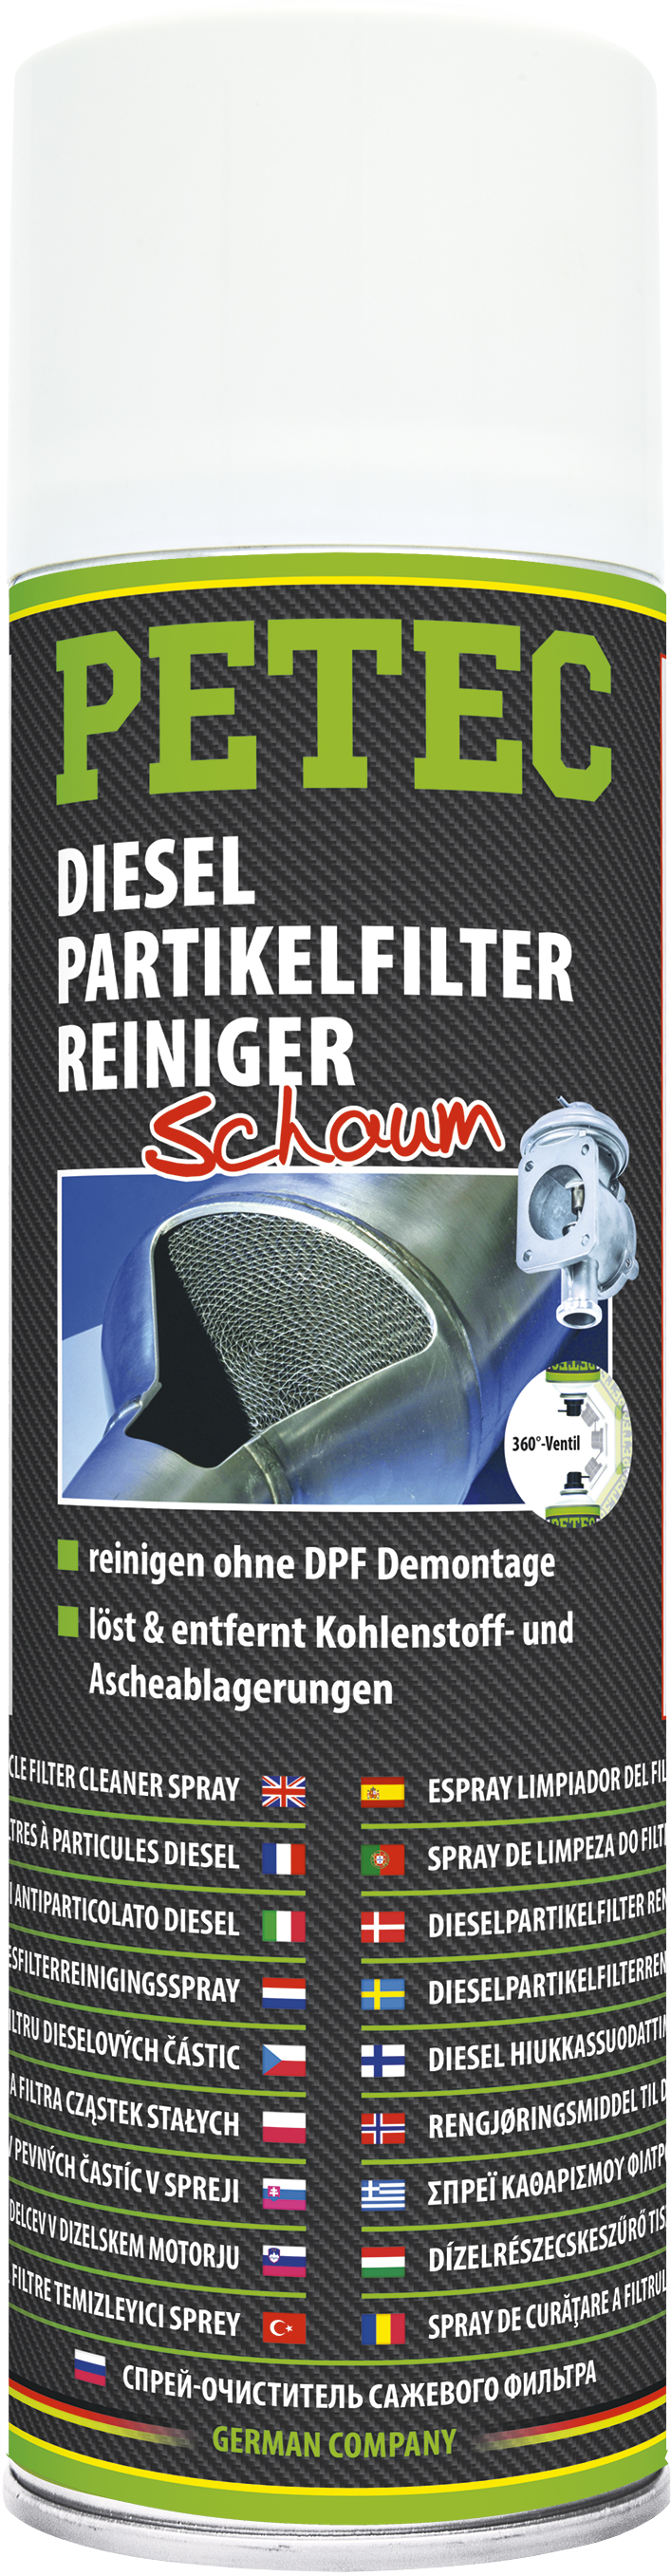 PETEC Diesel Partikelfilterreiniger DPF Reiniger Spray 400ml 72550